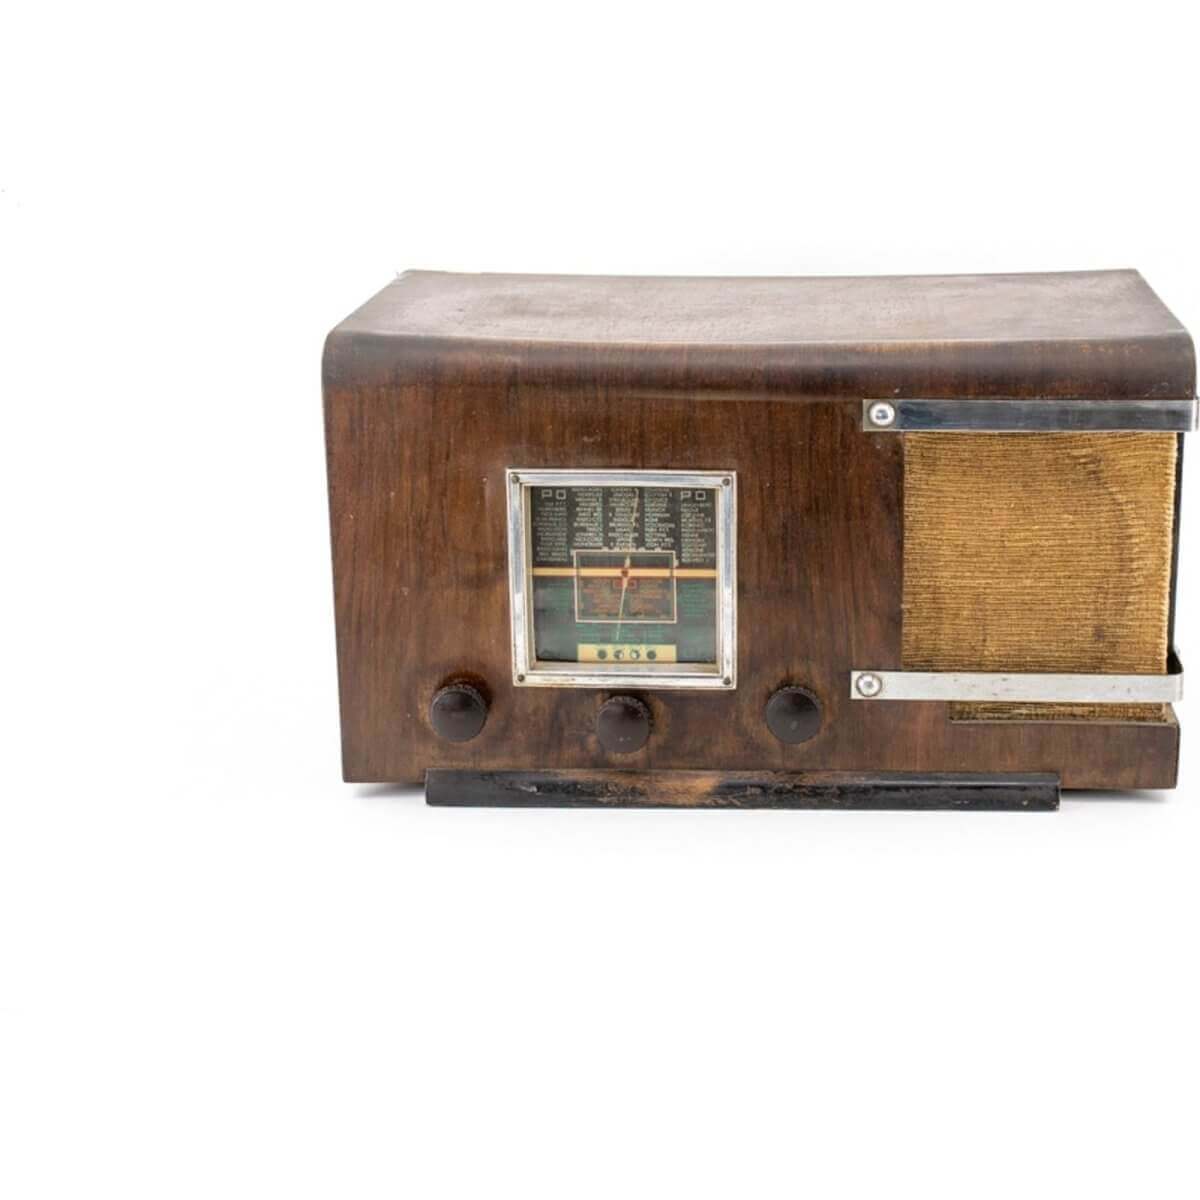 Radio Bluetooth Artisanale Vintage 40’S-A.bsolument-enceintes-et-radios-vintage-bluetooth